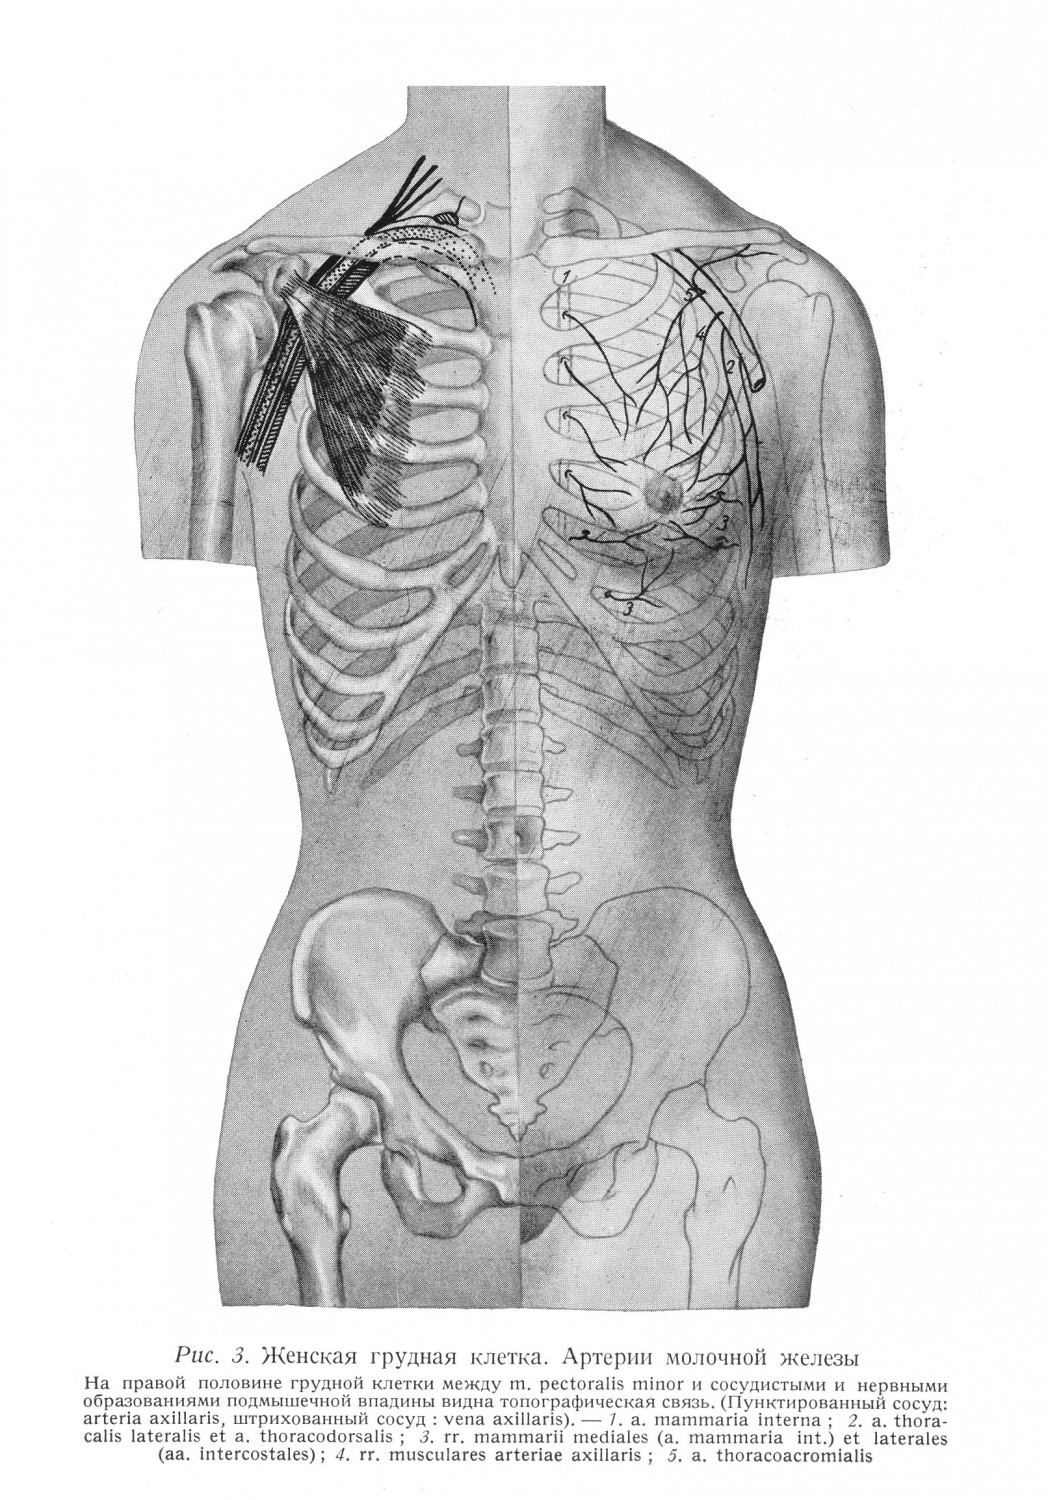 Женская грудная клетка. Артерии молочной железы